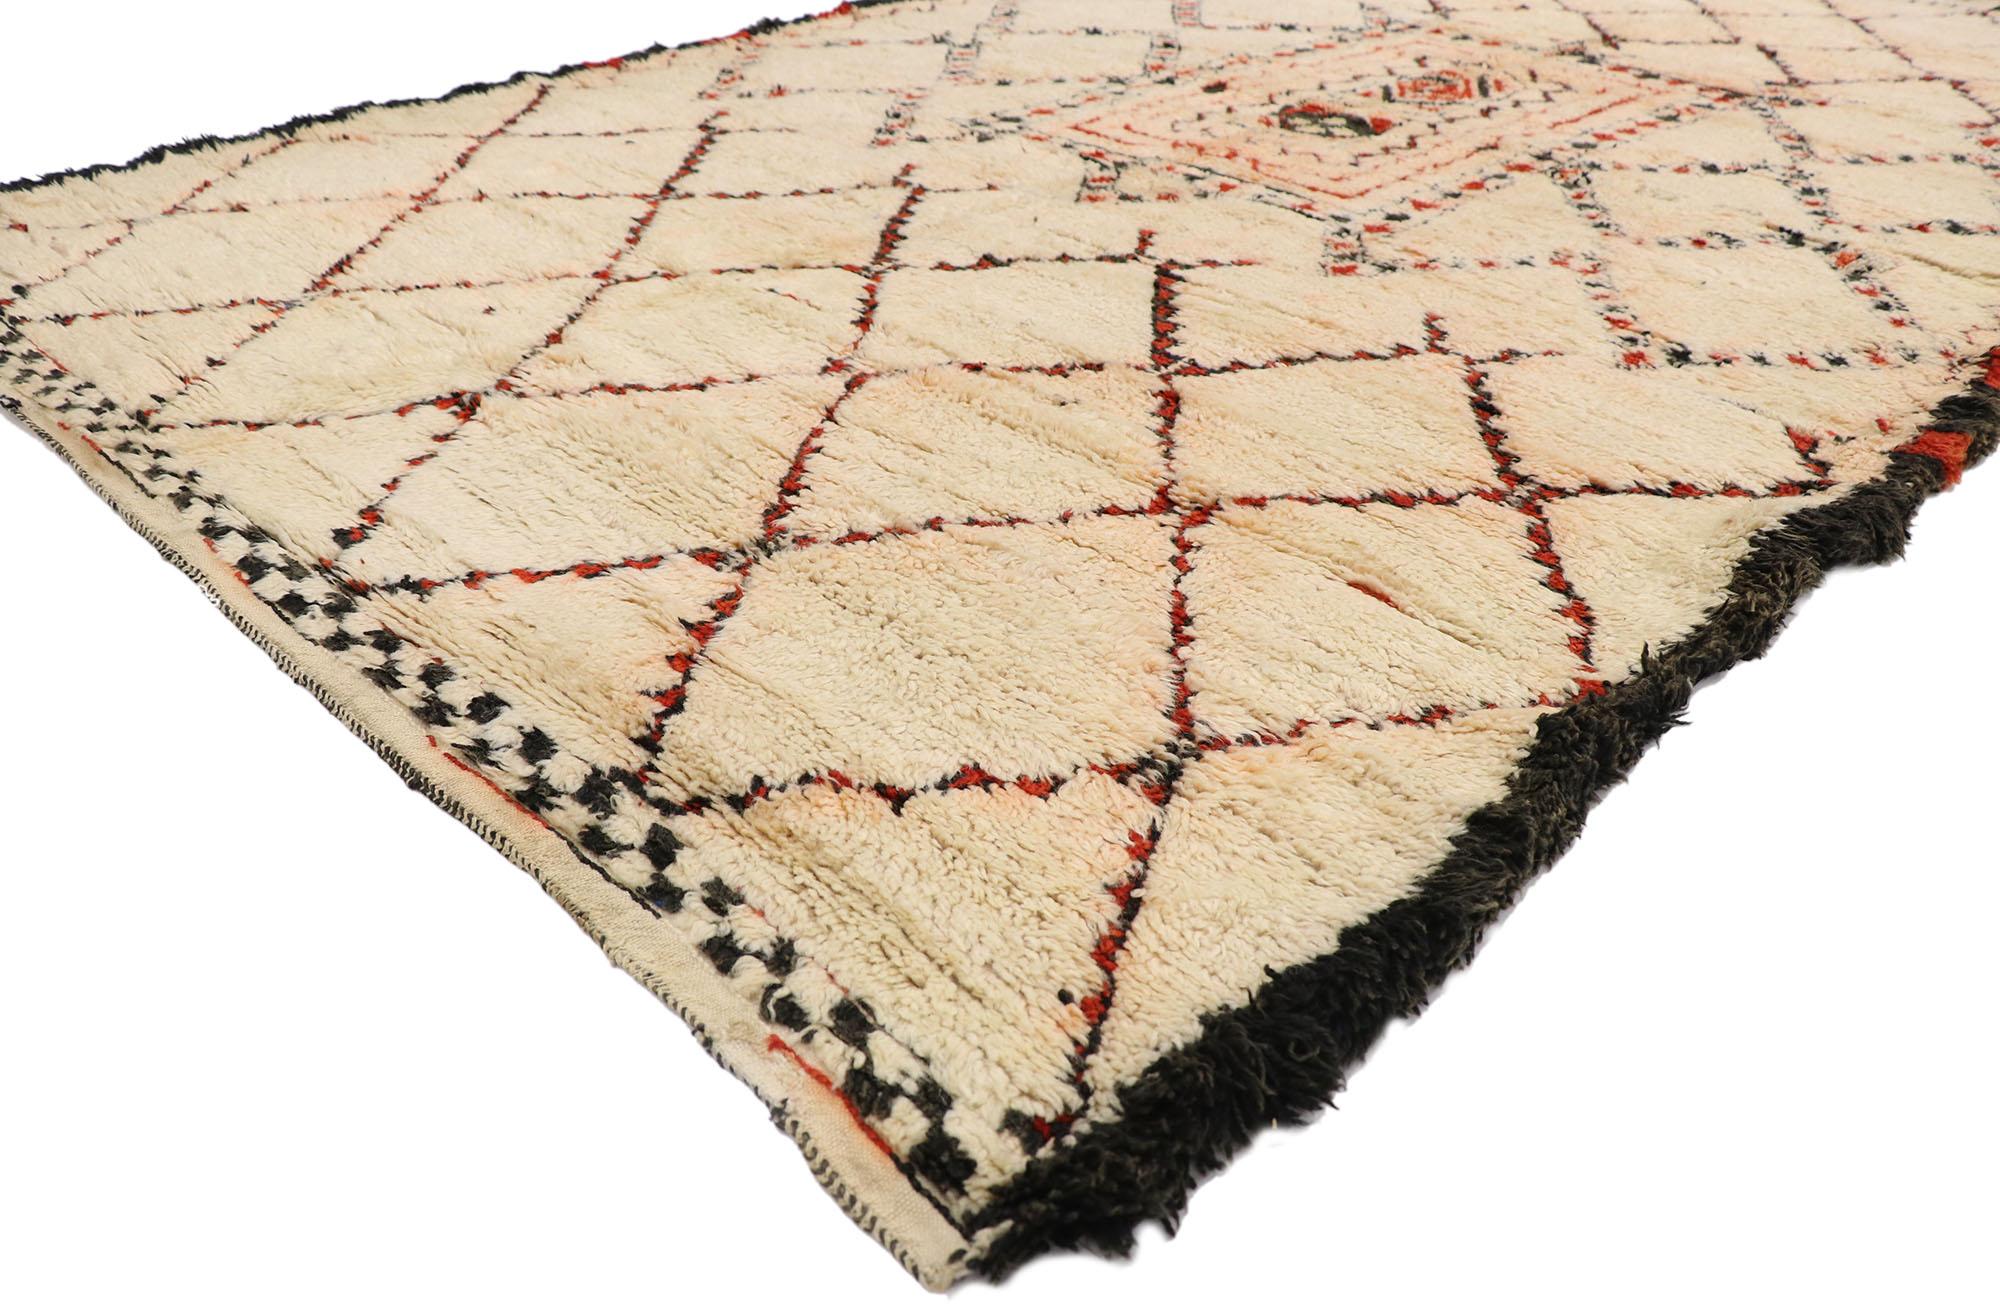 21384 Vintage Berber Beni Ourain Marokkanischer Teppich 06'01 x 10'01. Dieser handgeknüpfte marokkanische Berberteppich Beni Ourain aus Wolle besticht durch seine Schlichtheit, seine unglaublichen Details und seine Struktur. In der Mitte befindet